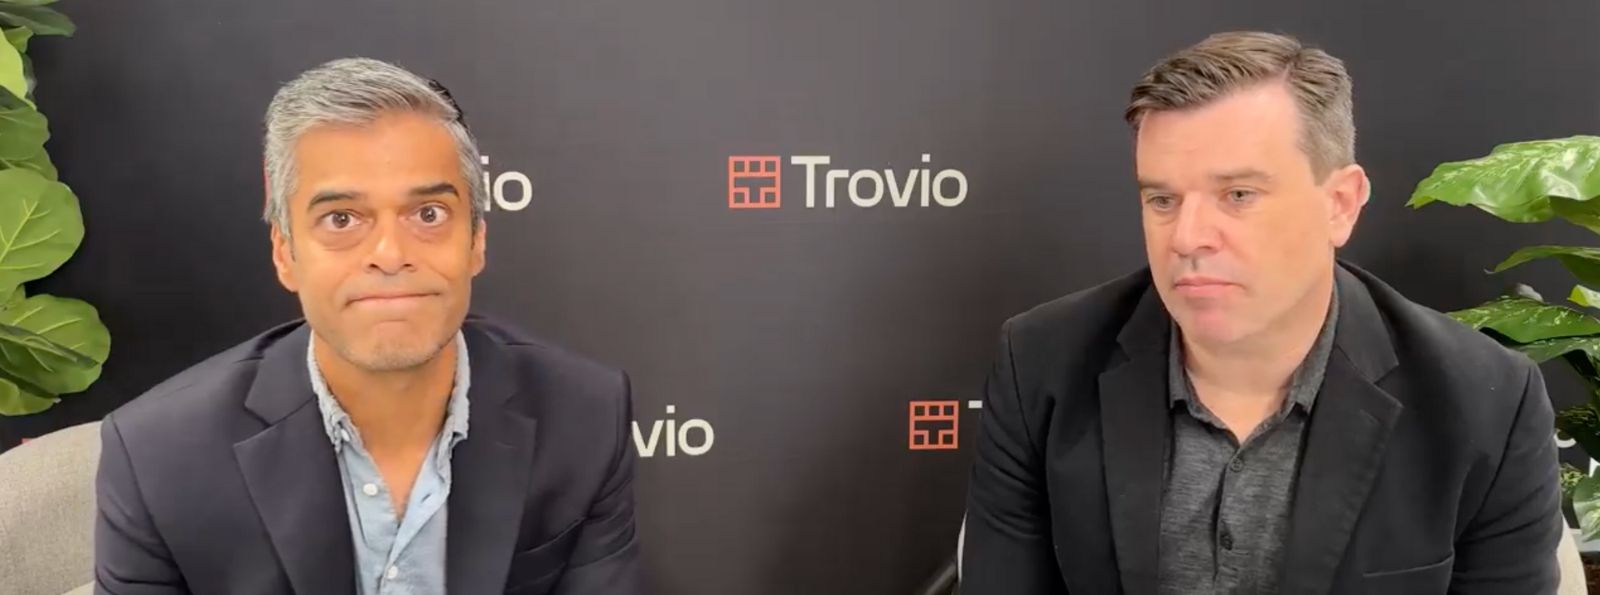 Vimal Gor and Thomas Ciszewski of Trovio Group